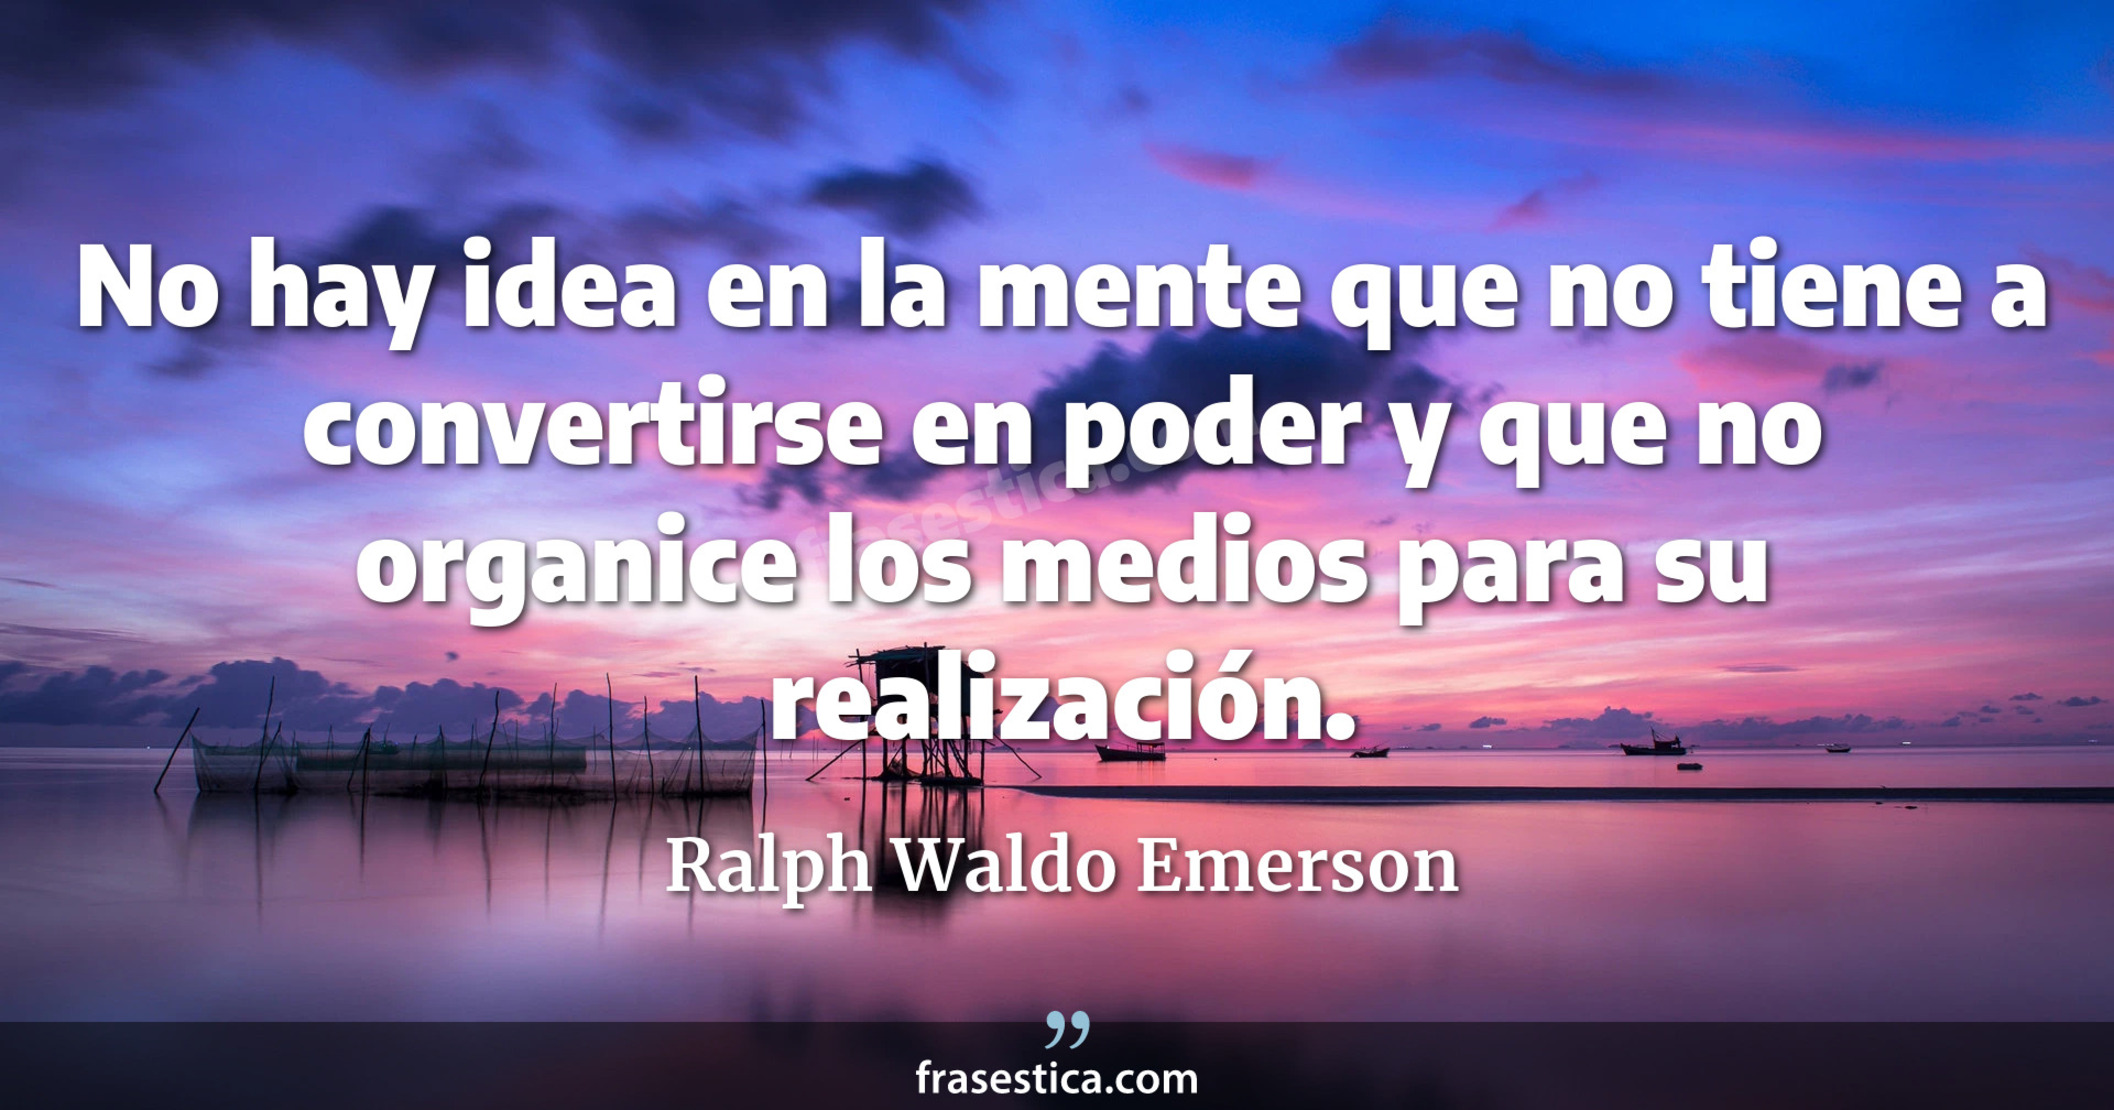 No hay idea en la mente que no tiene a convertirse en poder y que no organice los medios para su realización. - Ralph Waldo Emerson